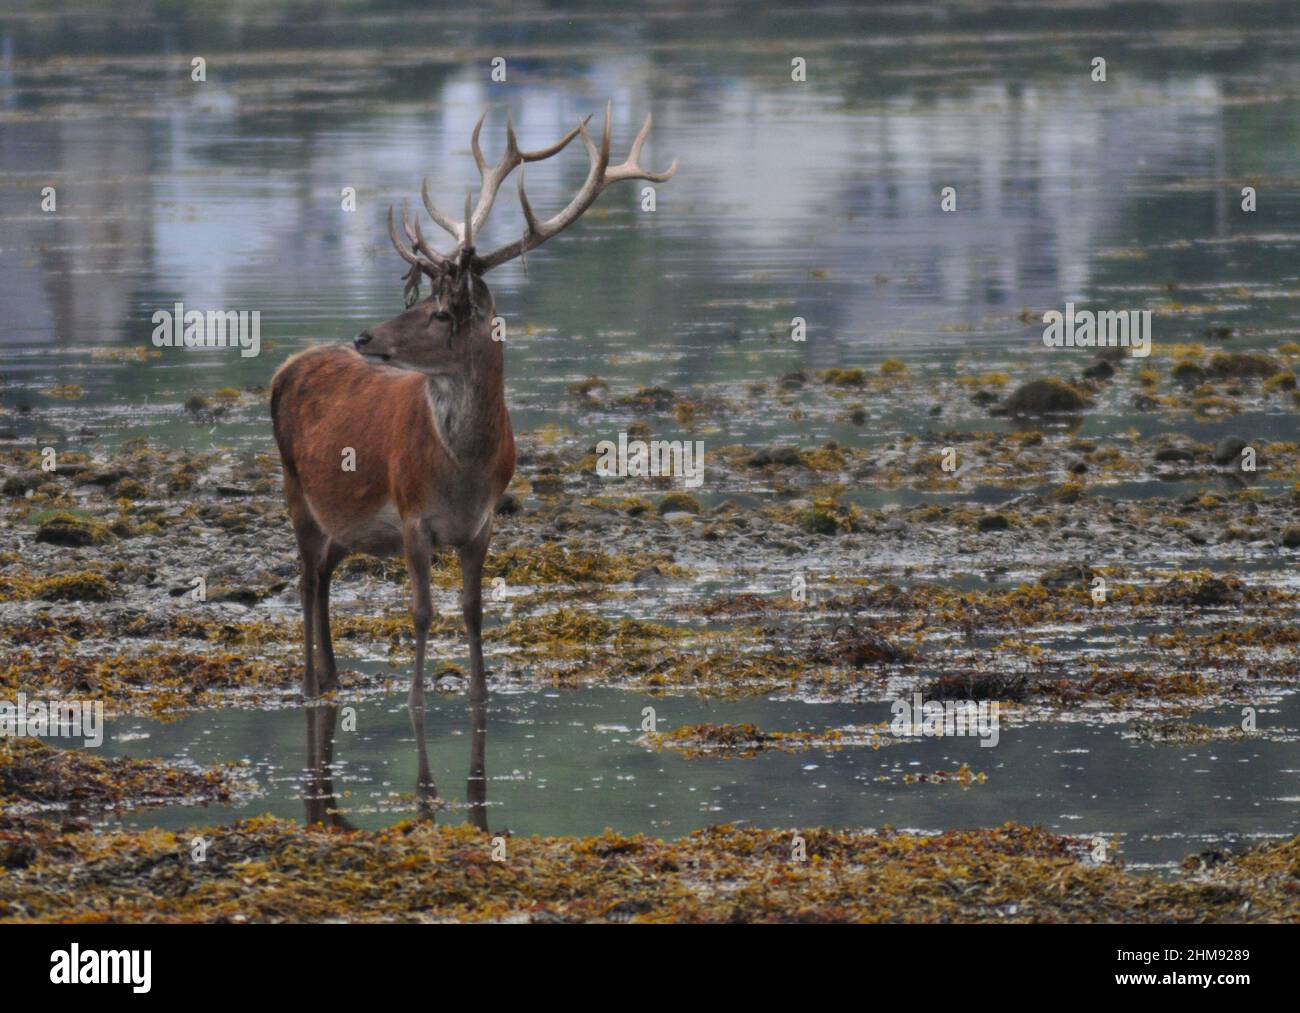 Una puntata in piedi nelle acque di Loch Ranza (Lochranza, Isola di Arran Scozia - UK) raffreddamento fuori dopo un giorno molto caldo di agosto Foto Stock